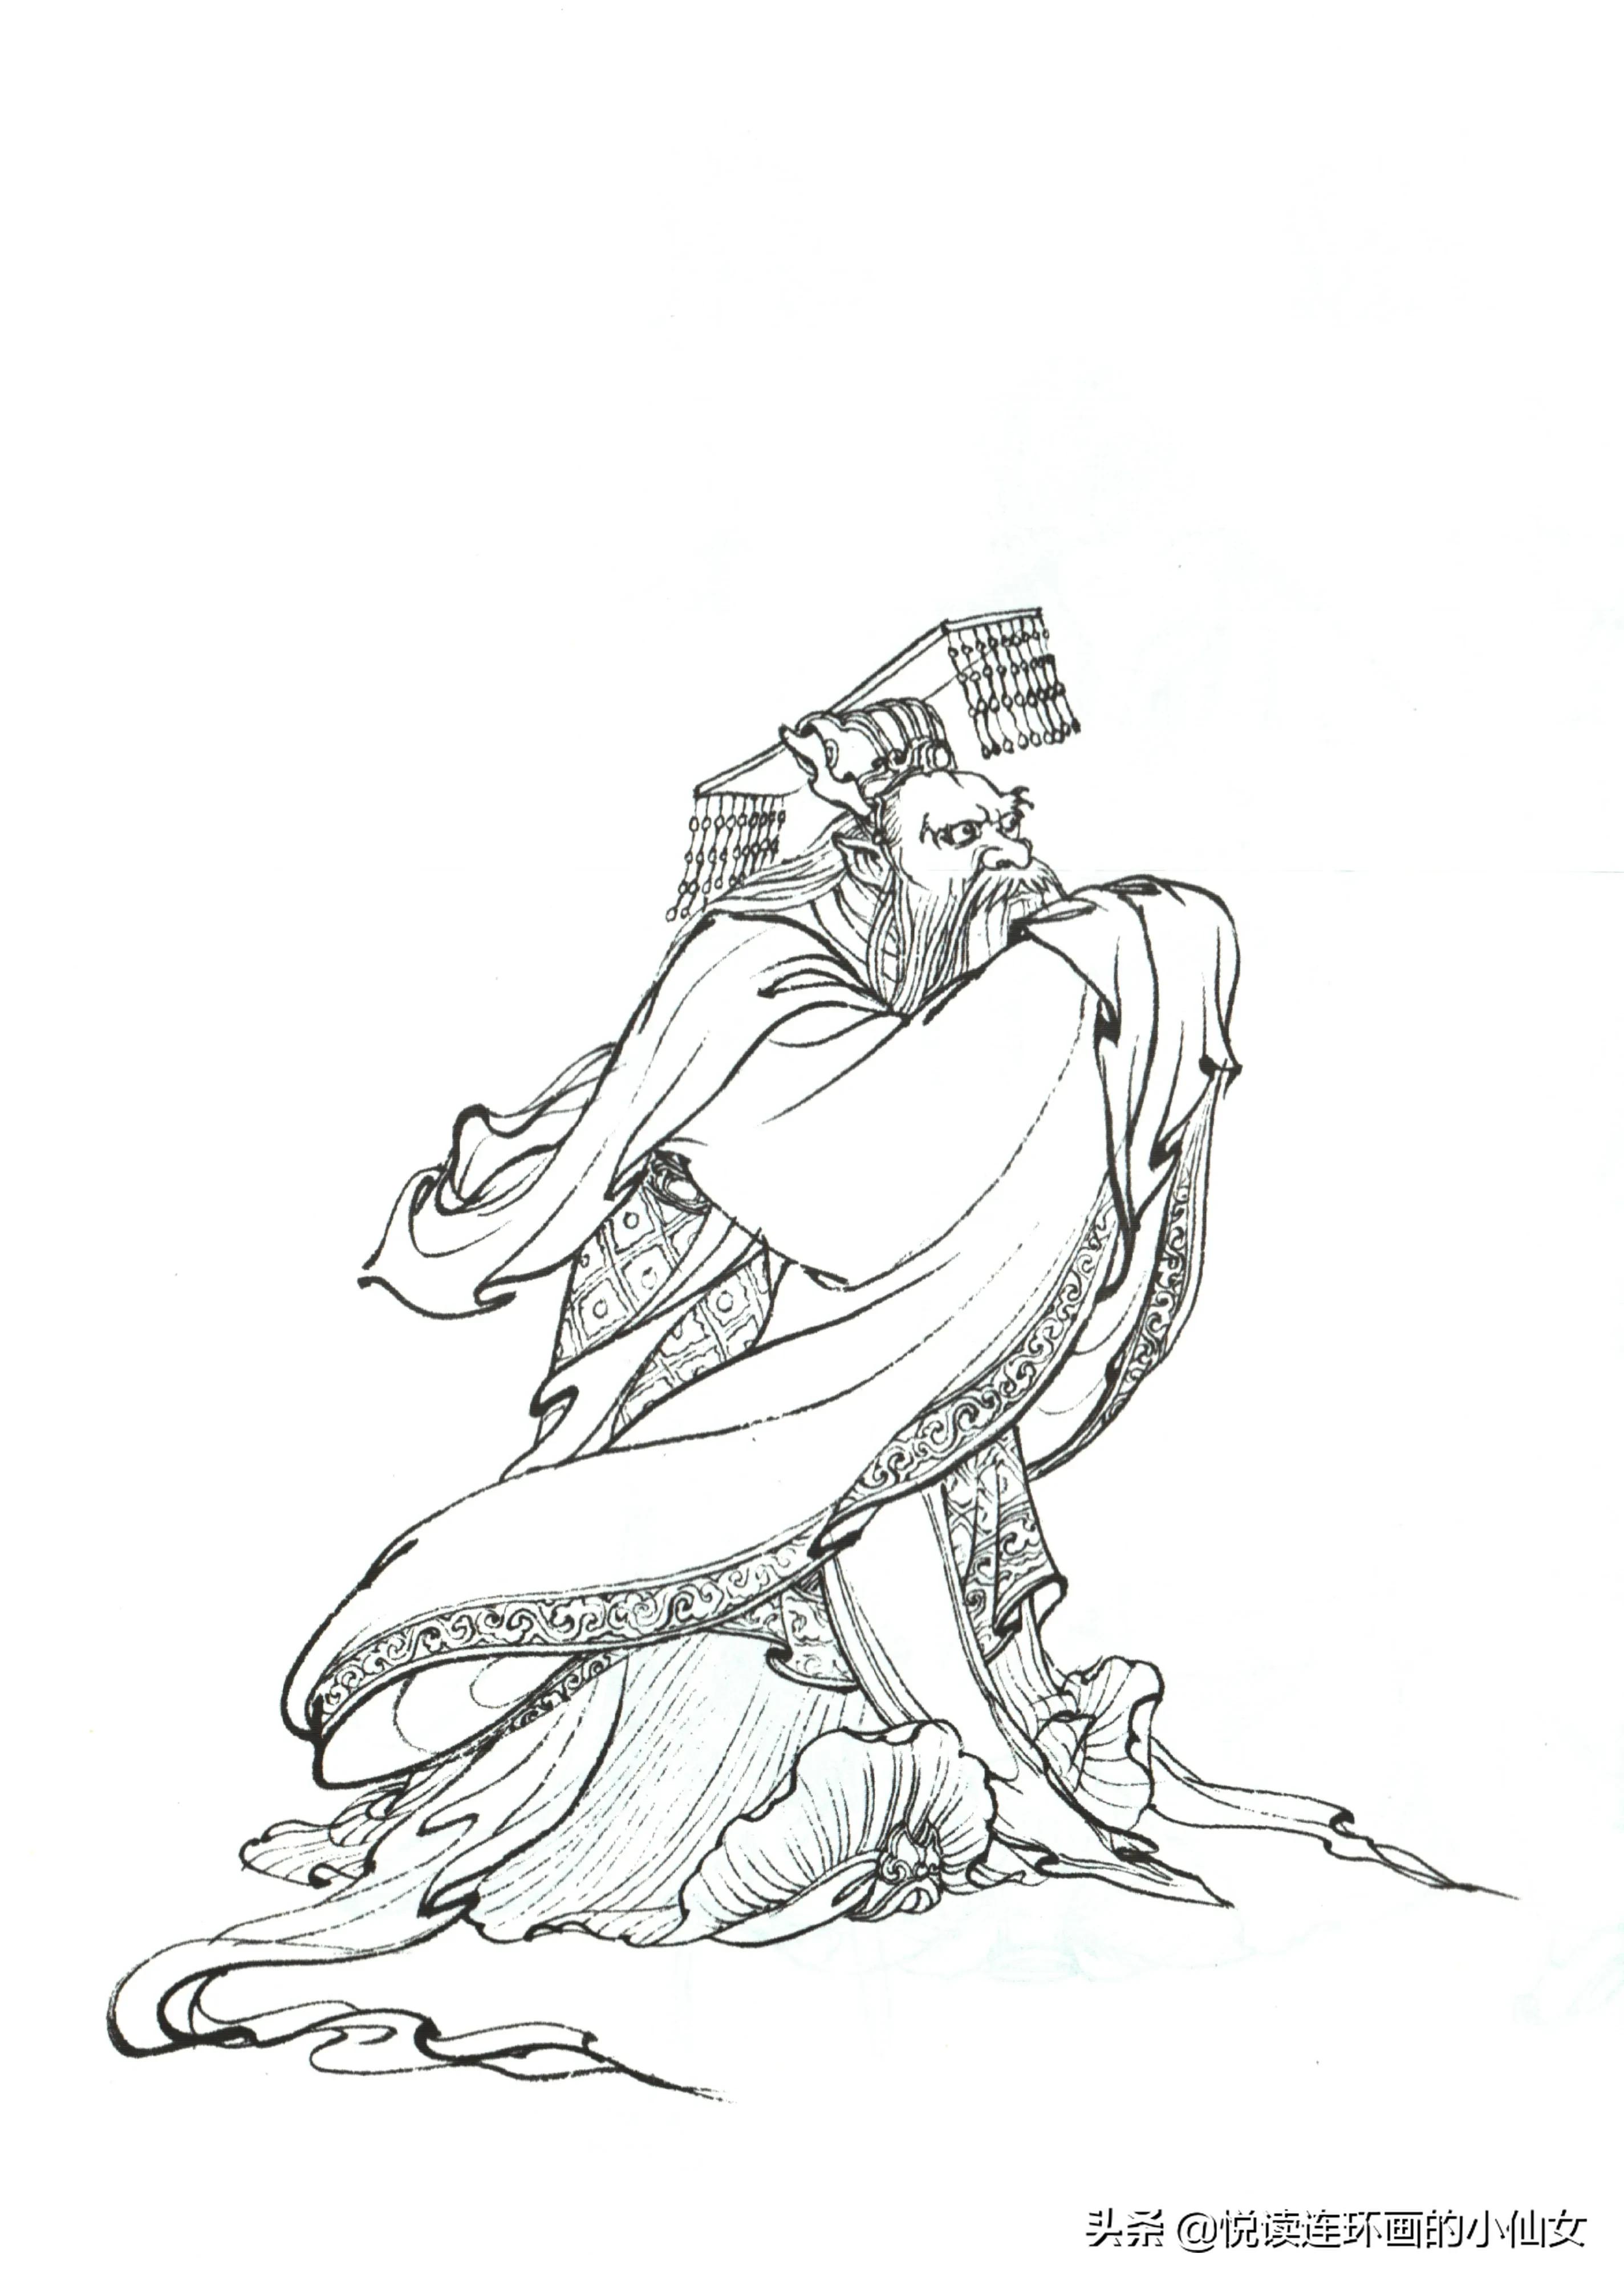 西游记神魔人物画谱，李云中绘插图(97)